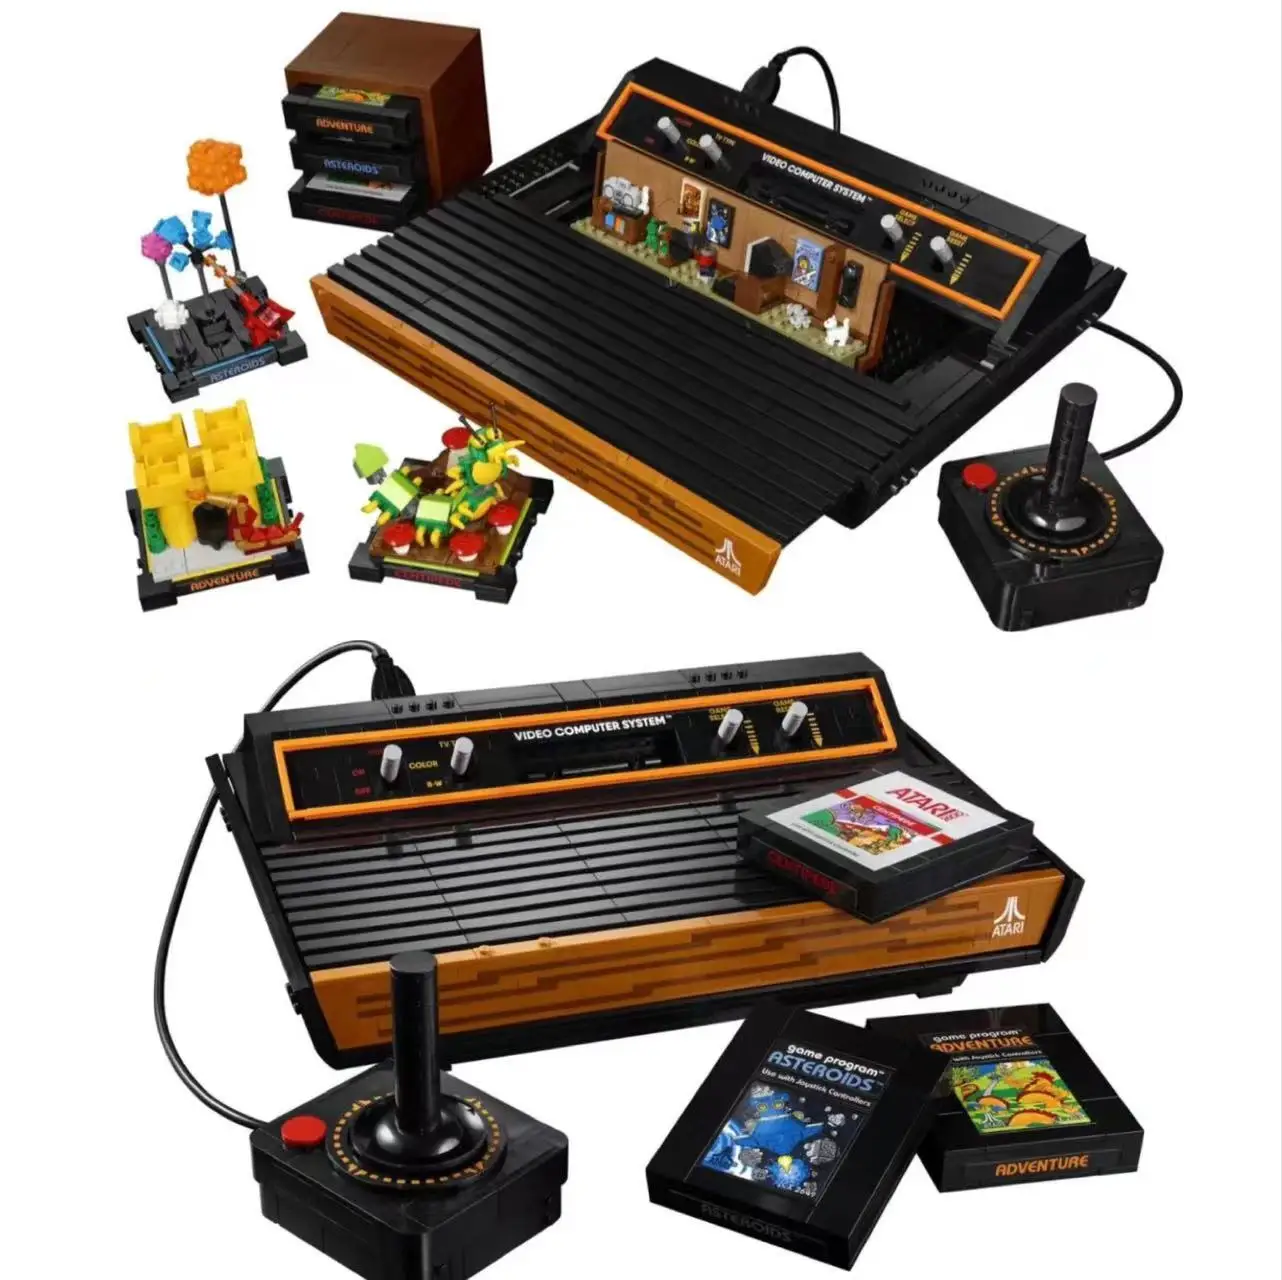 

2022 Новинка 10306 Atari 2600 консоль видео компьютерная система иконы модель строительные блоки кирпичи игровой набор игрушки для детей Подарки